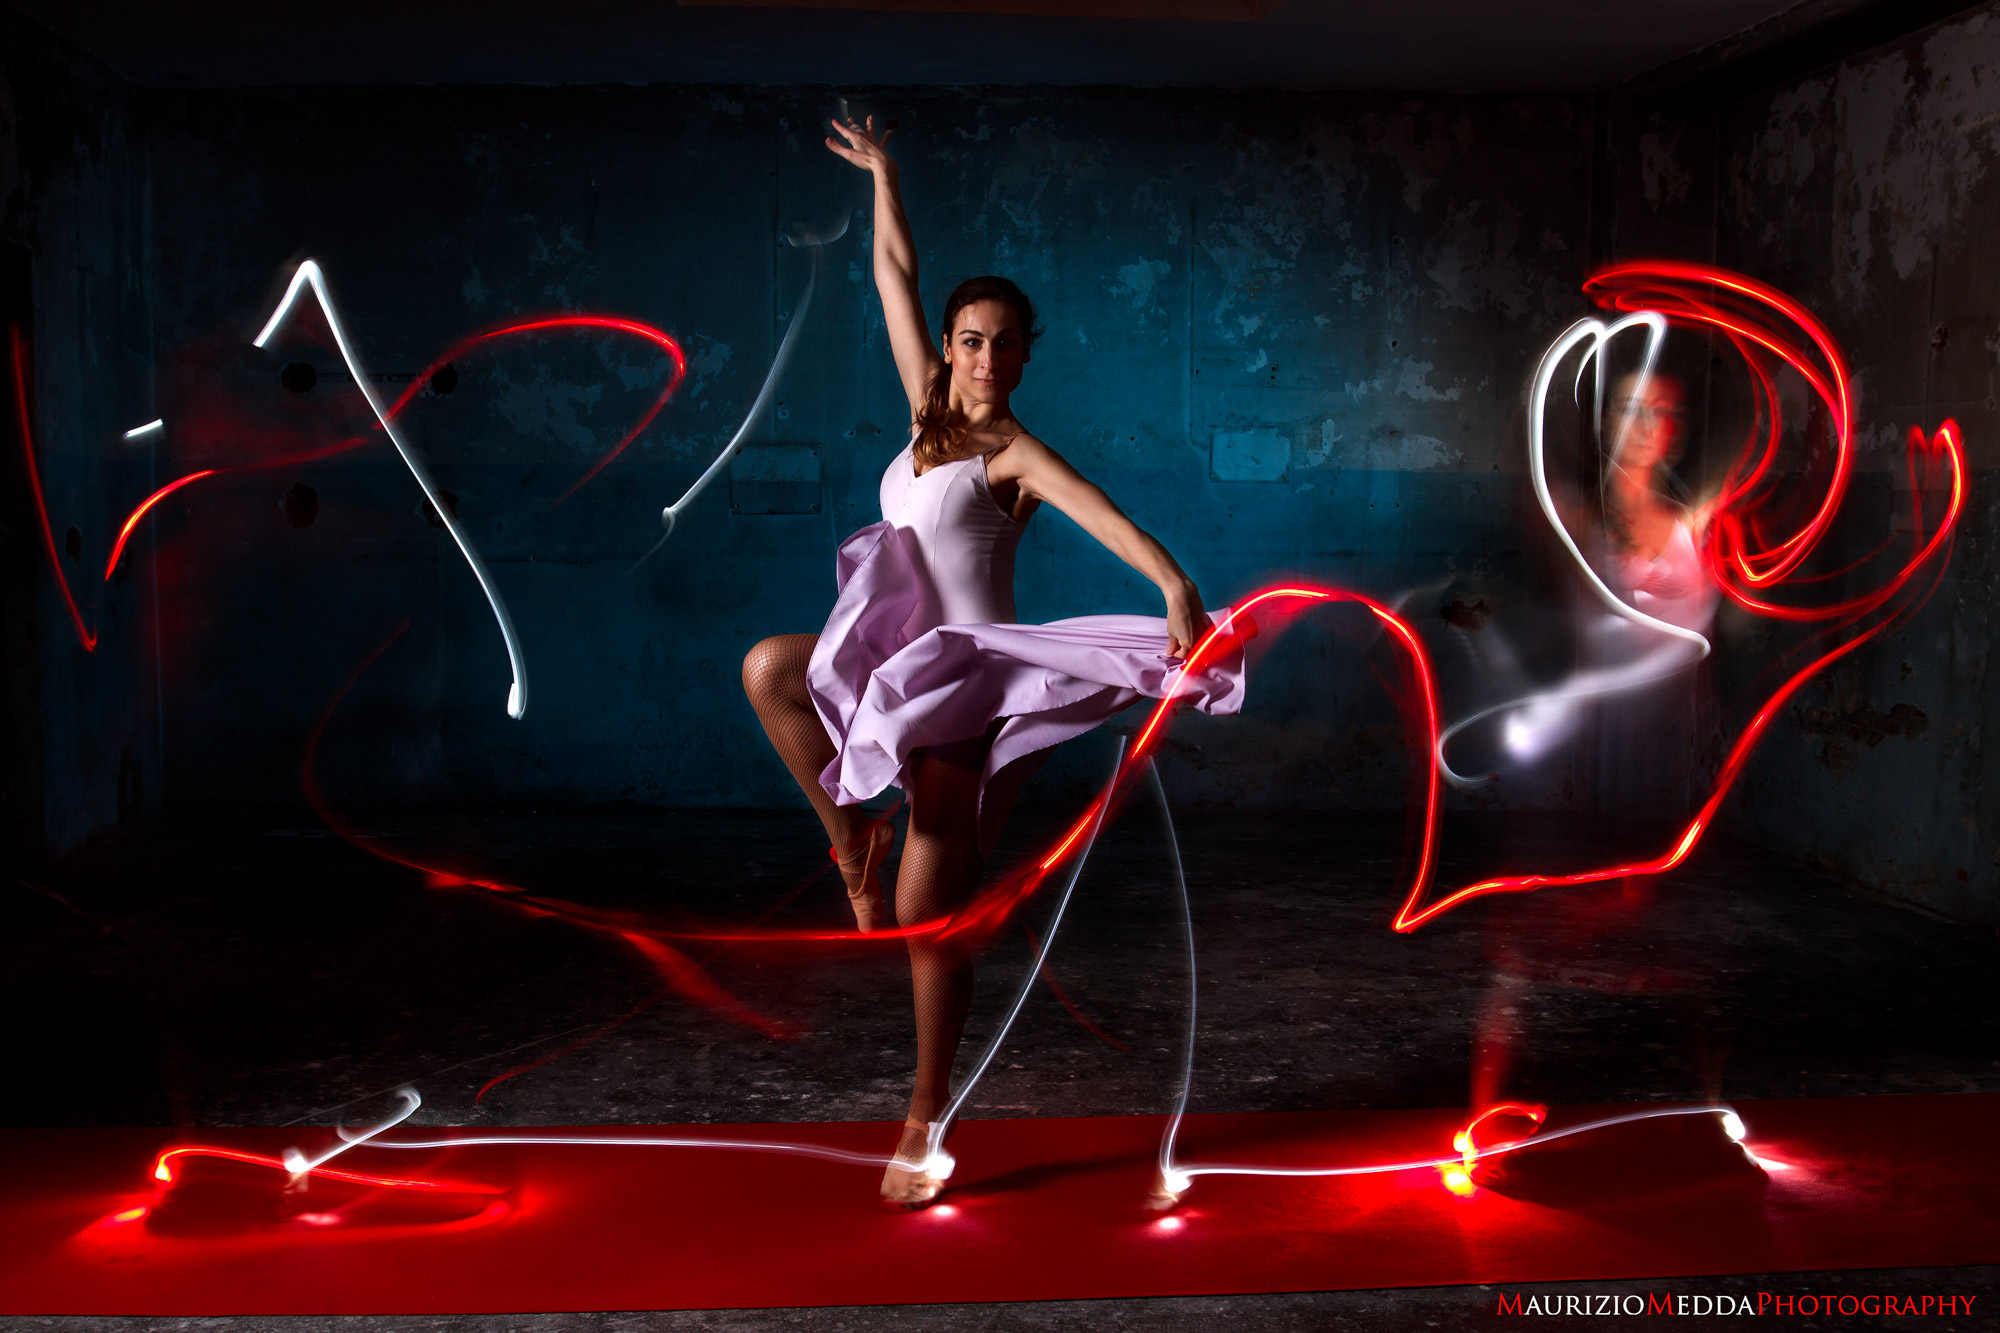 Wallpaper, Studio, lights, ballerina, Flash, dancer 2000x1333